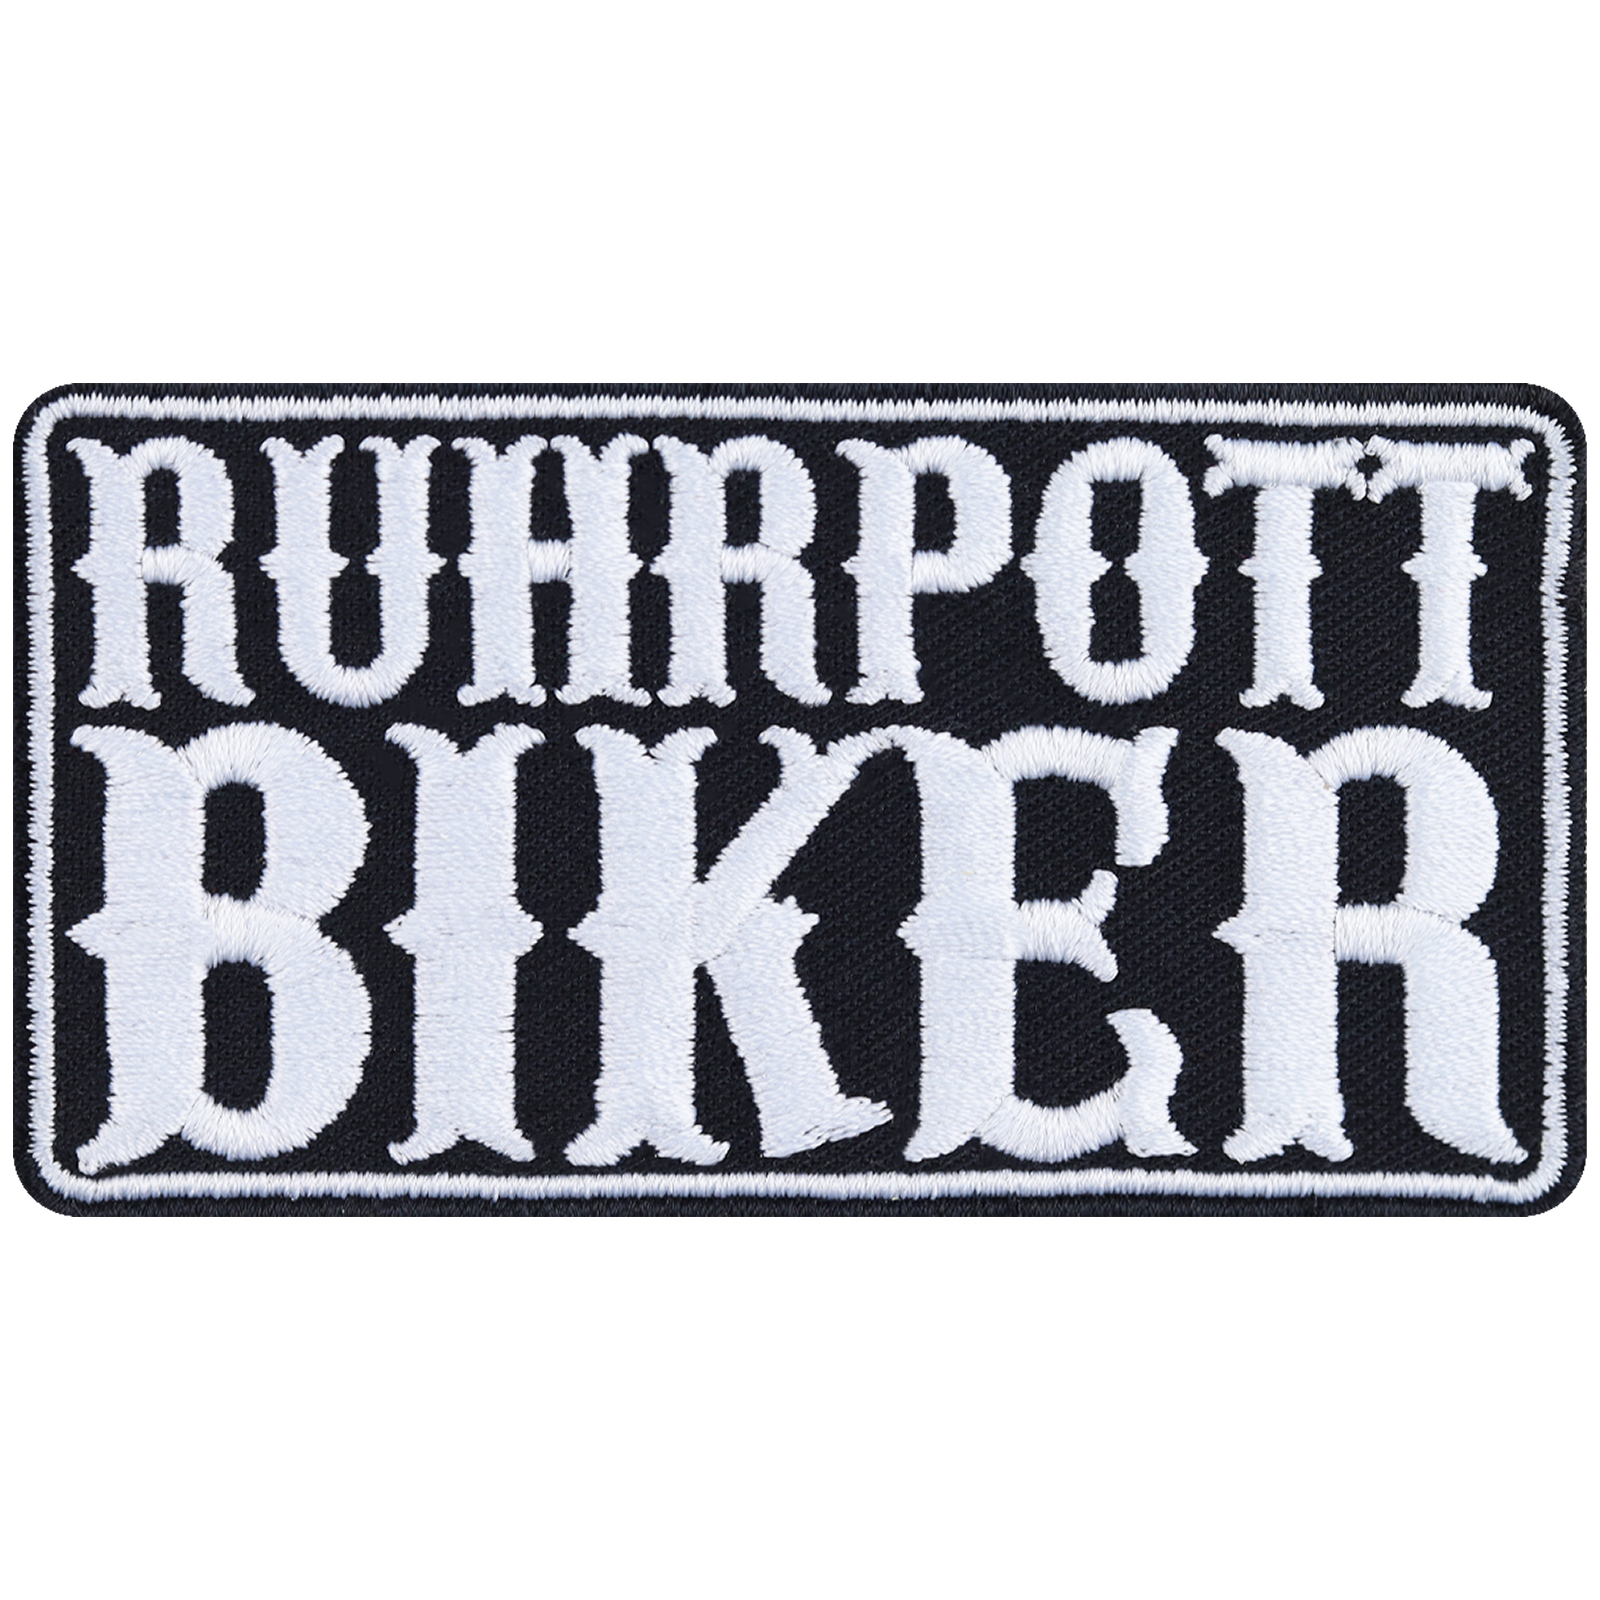 Ruhrpott Biker - Patch